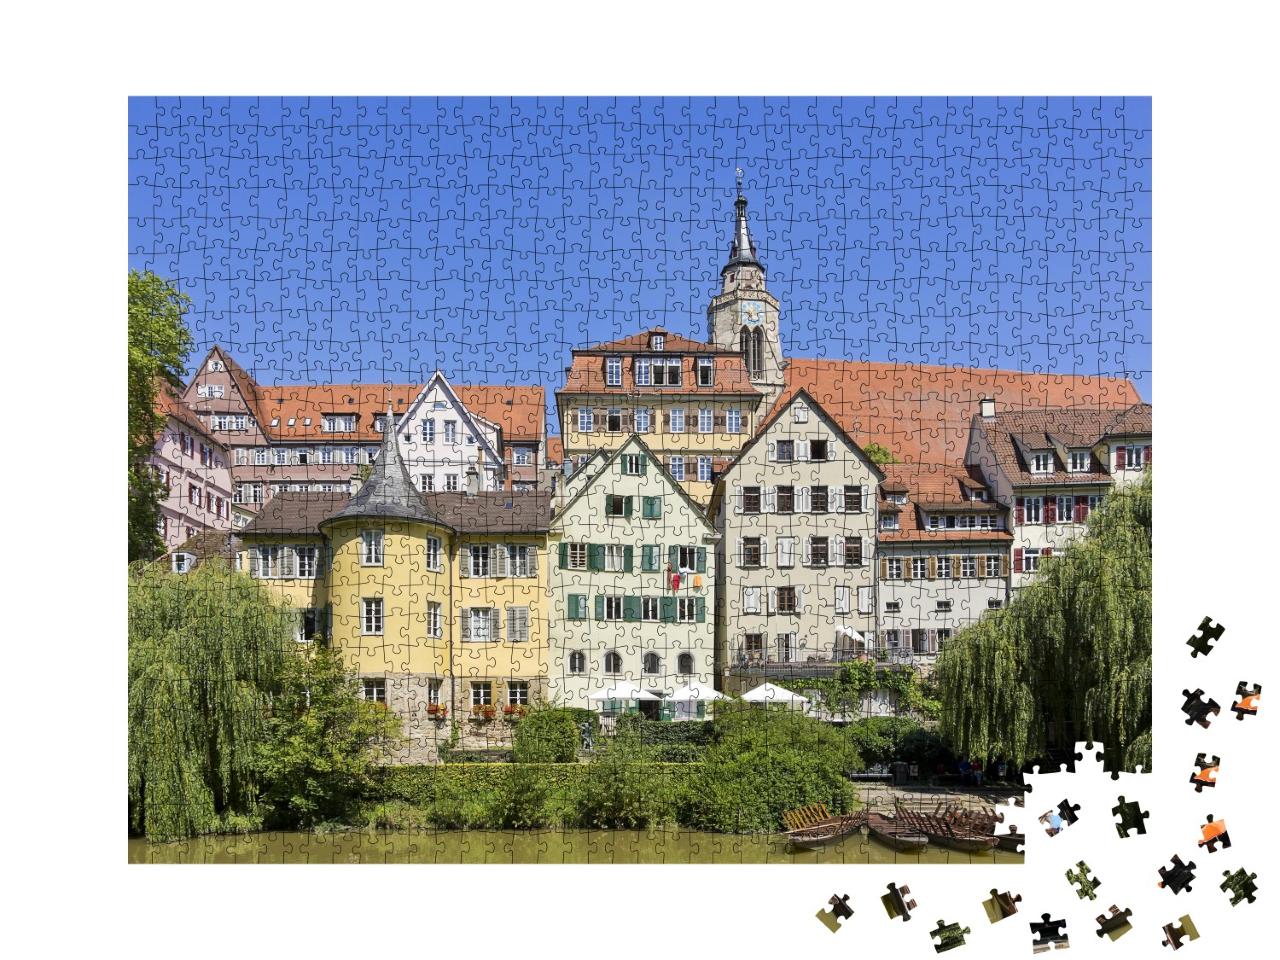 Puzzle 1000 Teile „Historische Häuserfront am Neckar, Tübingen, Deutschland“